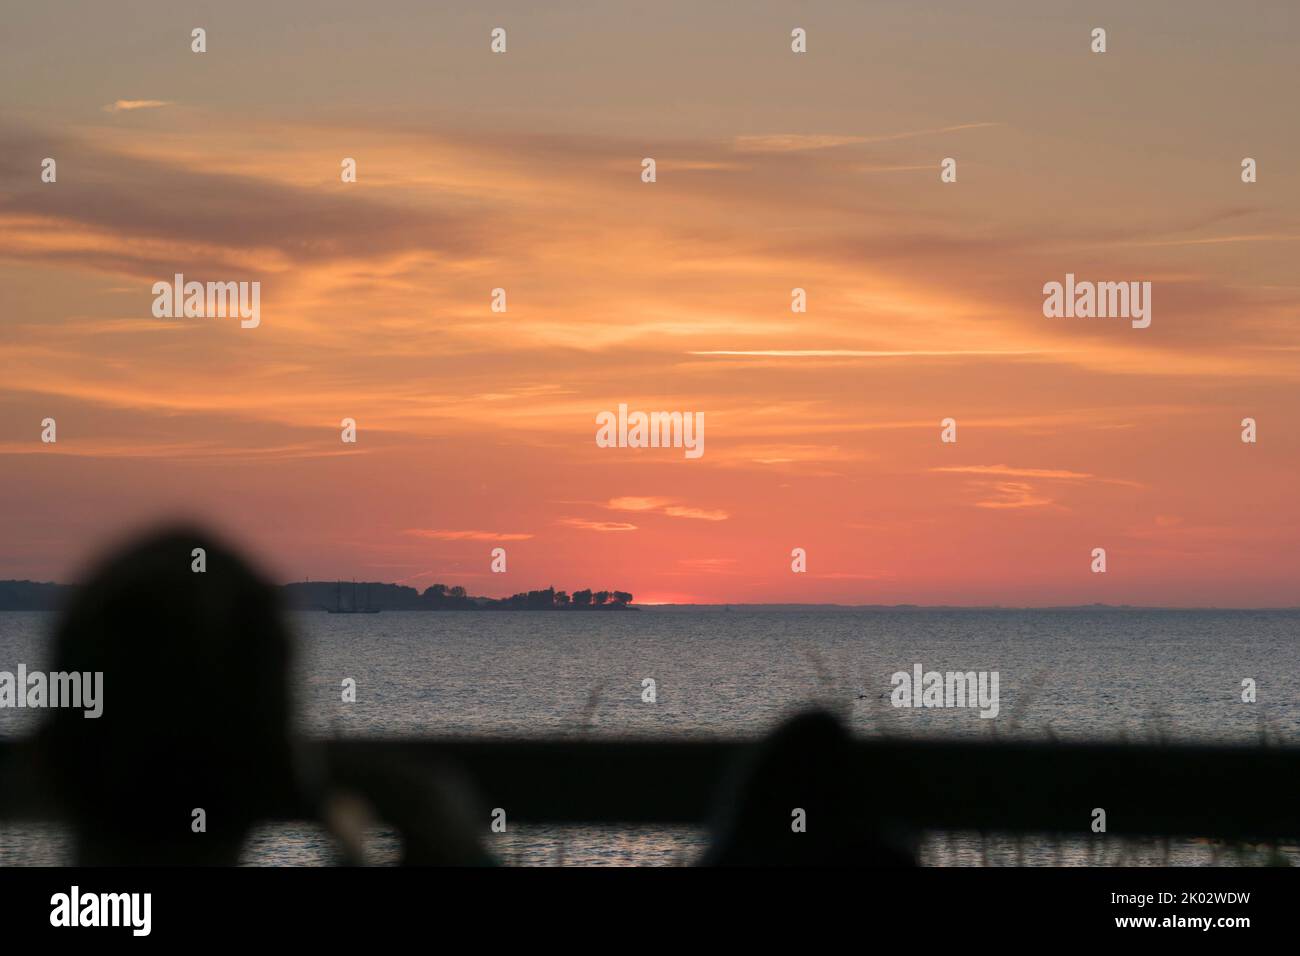 Un homme avec un téléphone portable regarde le coucher de soleil sur la mer. Banque D'Images